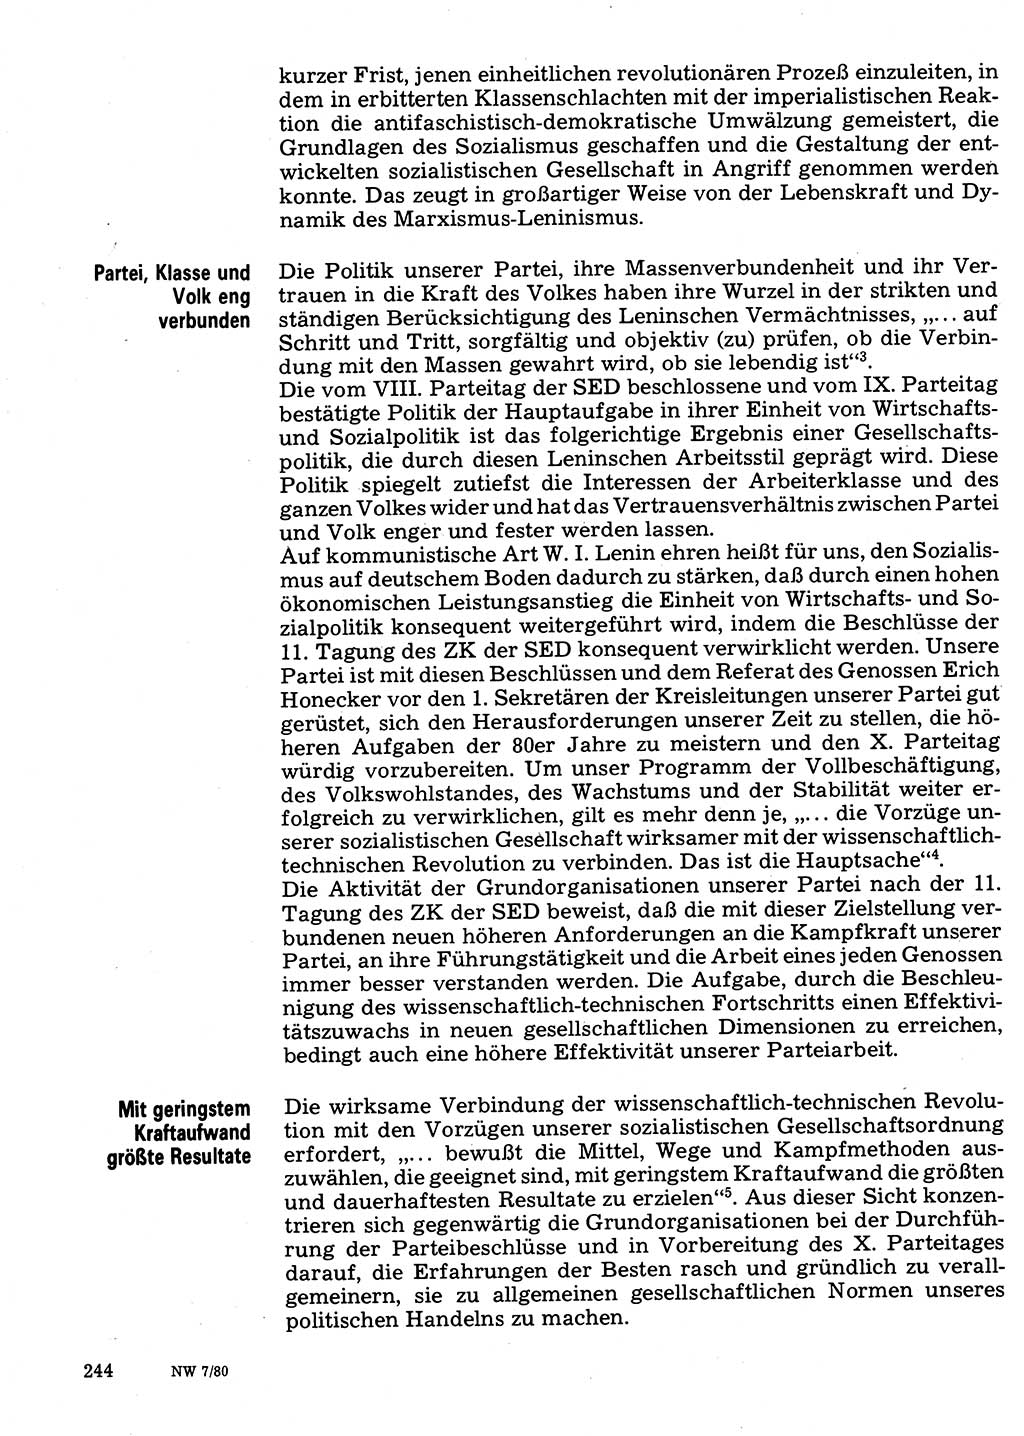 Neuer Weg (NW), Organ des Zentralkomitees (ZK) der SED (Sozialistische Einheitspartei Deutschlands) für Fragen des Parteilebens, 35. Jahrgang [Deutsche Demokratische Republik (DDR)] 1980, Seite 244 (NW ZK SED DDR 1980, S. 244)